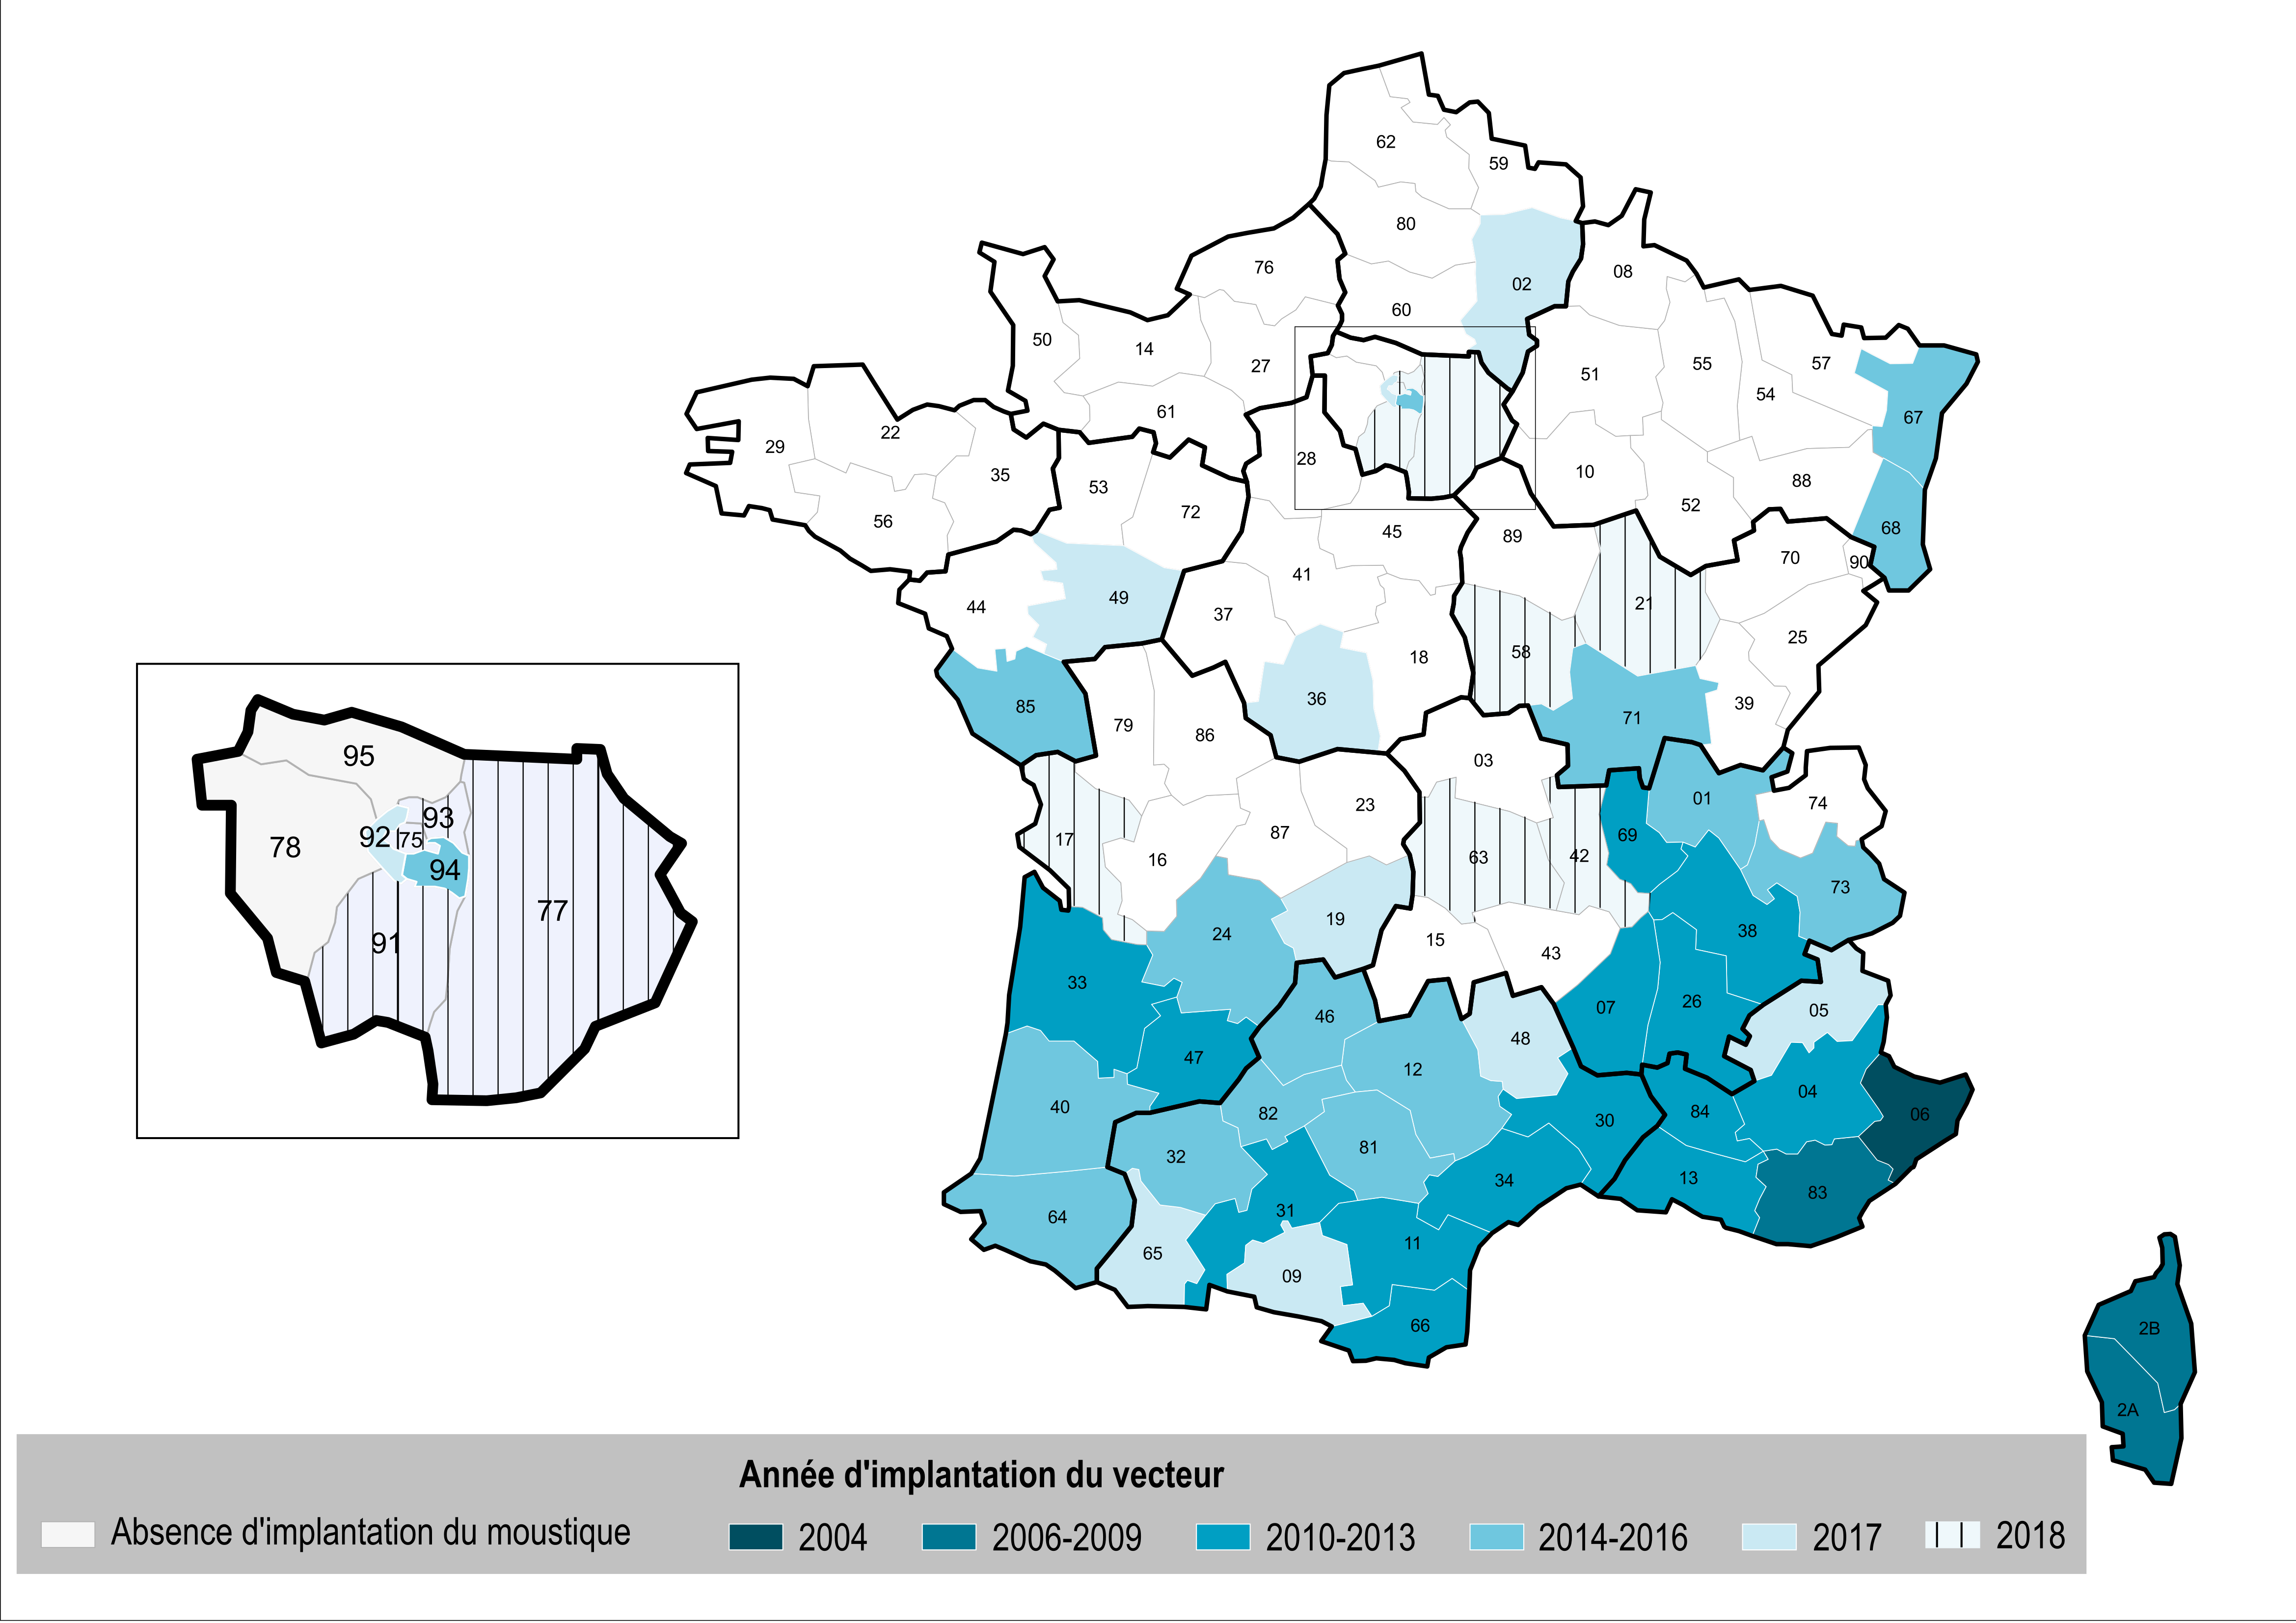 Département et année d'implantation du vecteur Aedes albopictus en France métropolitaine